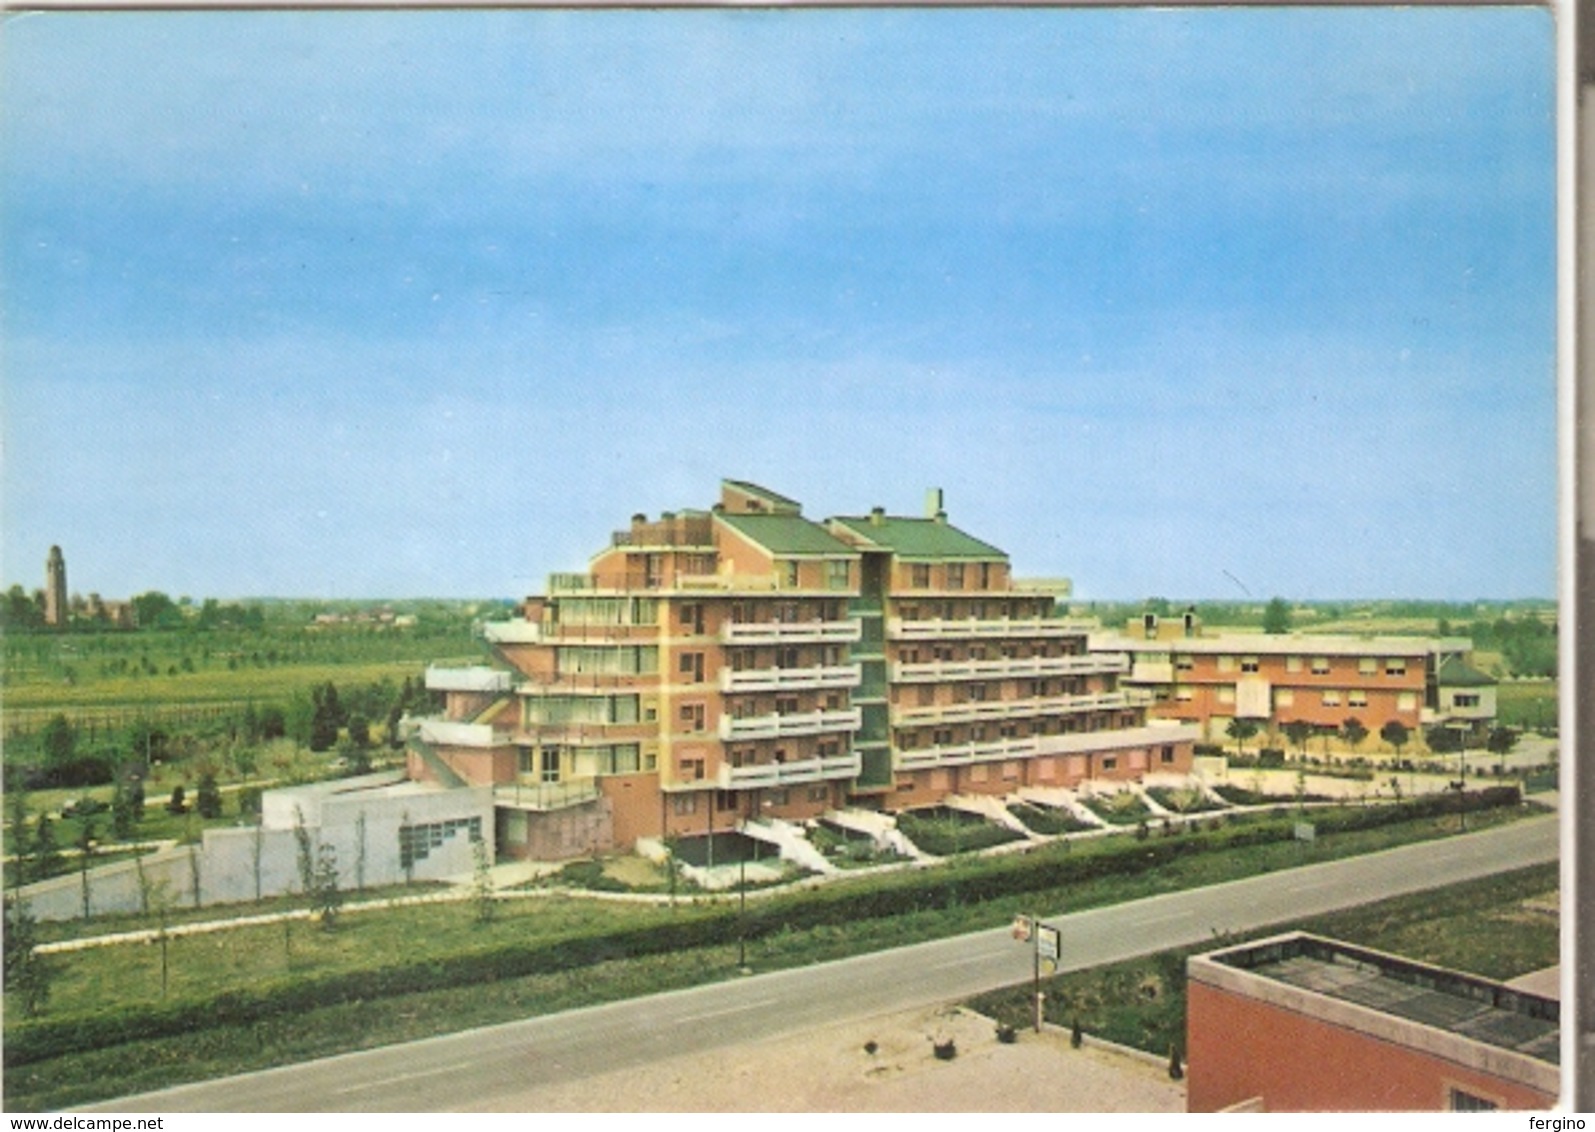 441/FG/19 - ALBERHI - MONASTIER (TREVISO): Park Hotel "Villa Fiorita" - Treviso